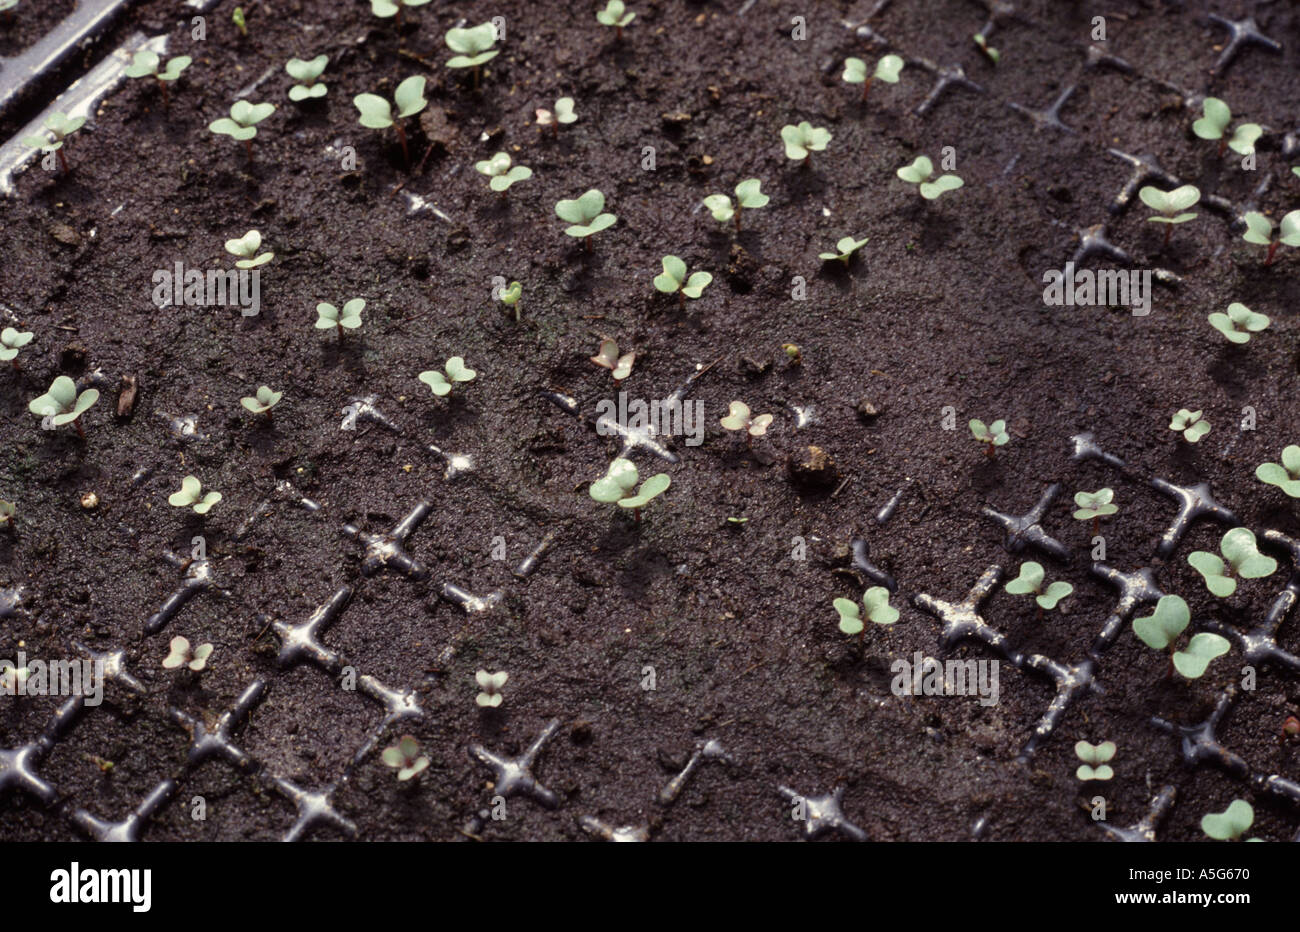 L'amortissement montrant une mauvaise germination des semis dans des bacs de semences de choux Banque D'Images